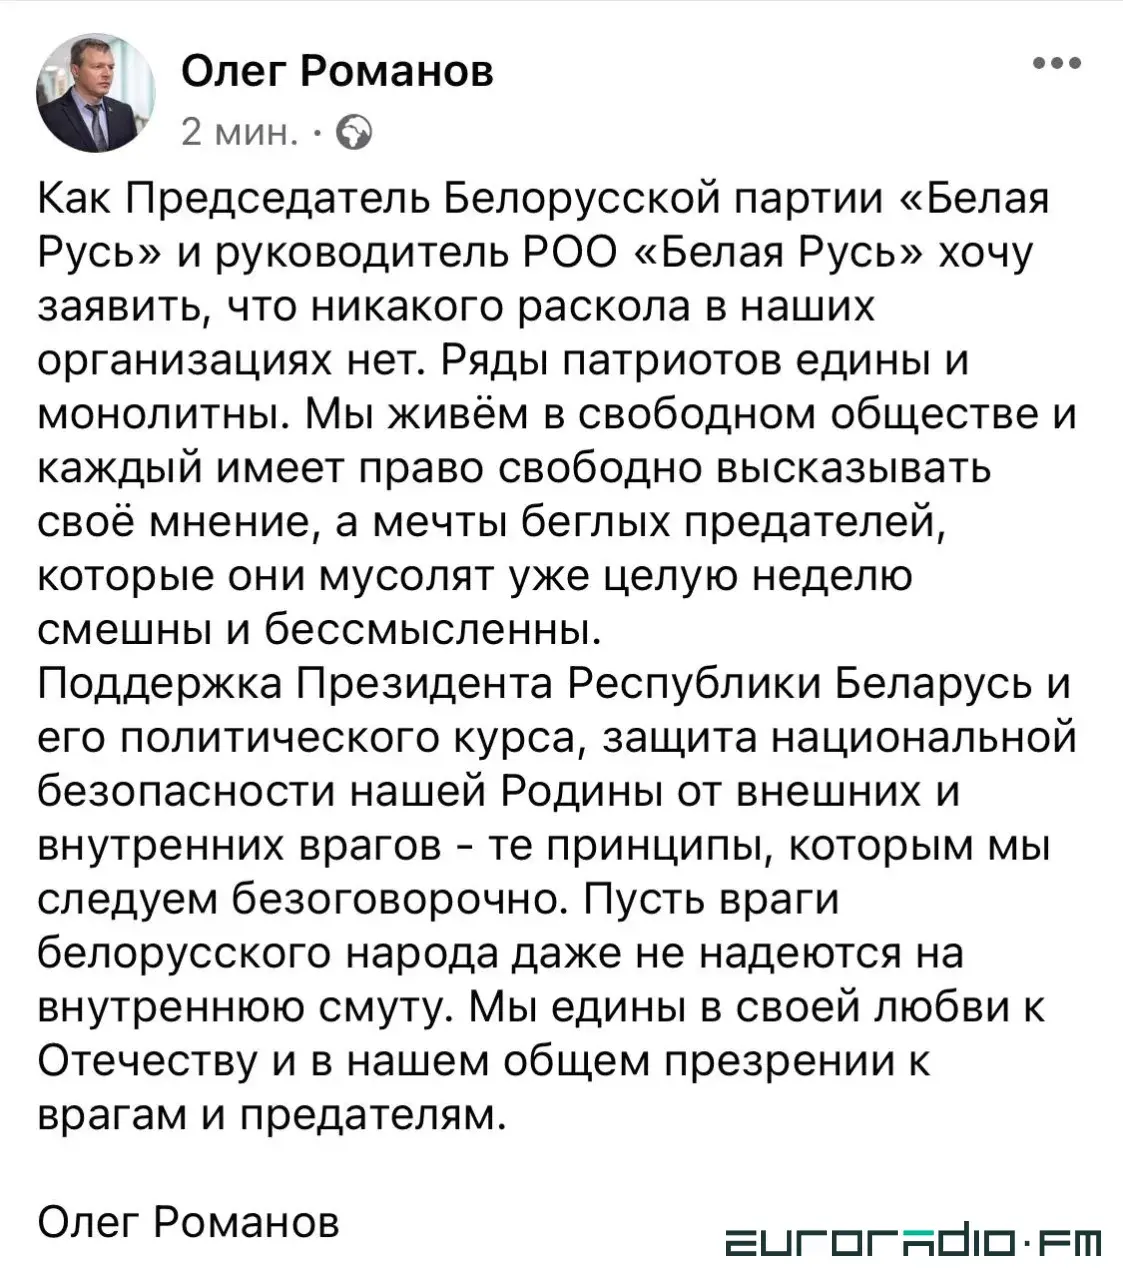 Председатель "Белой Руси" внезапно высказался о том, что раскола в партии нет